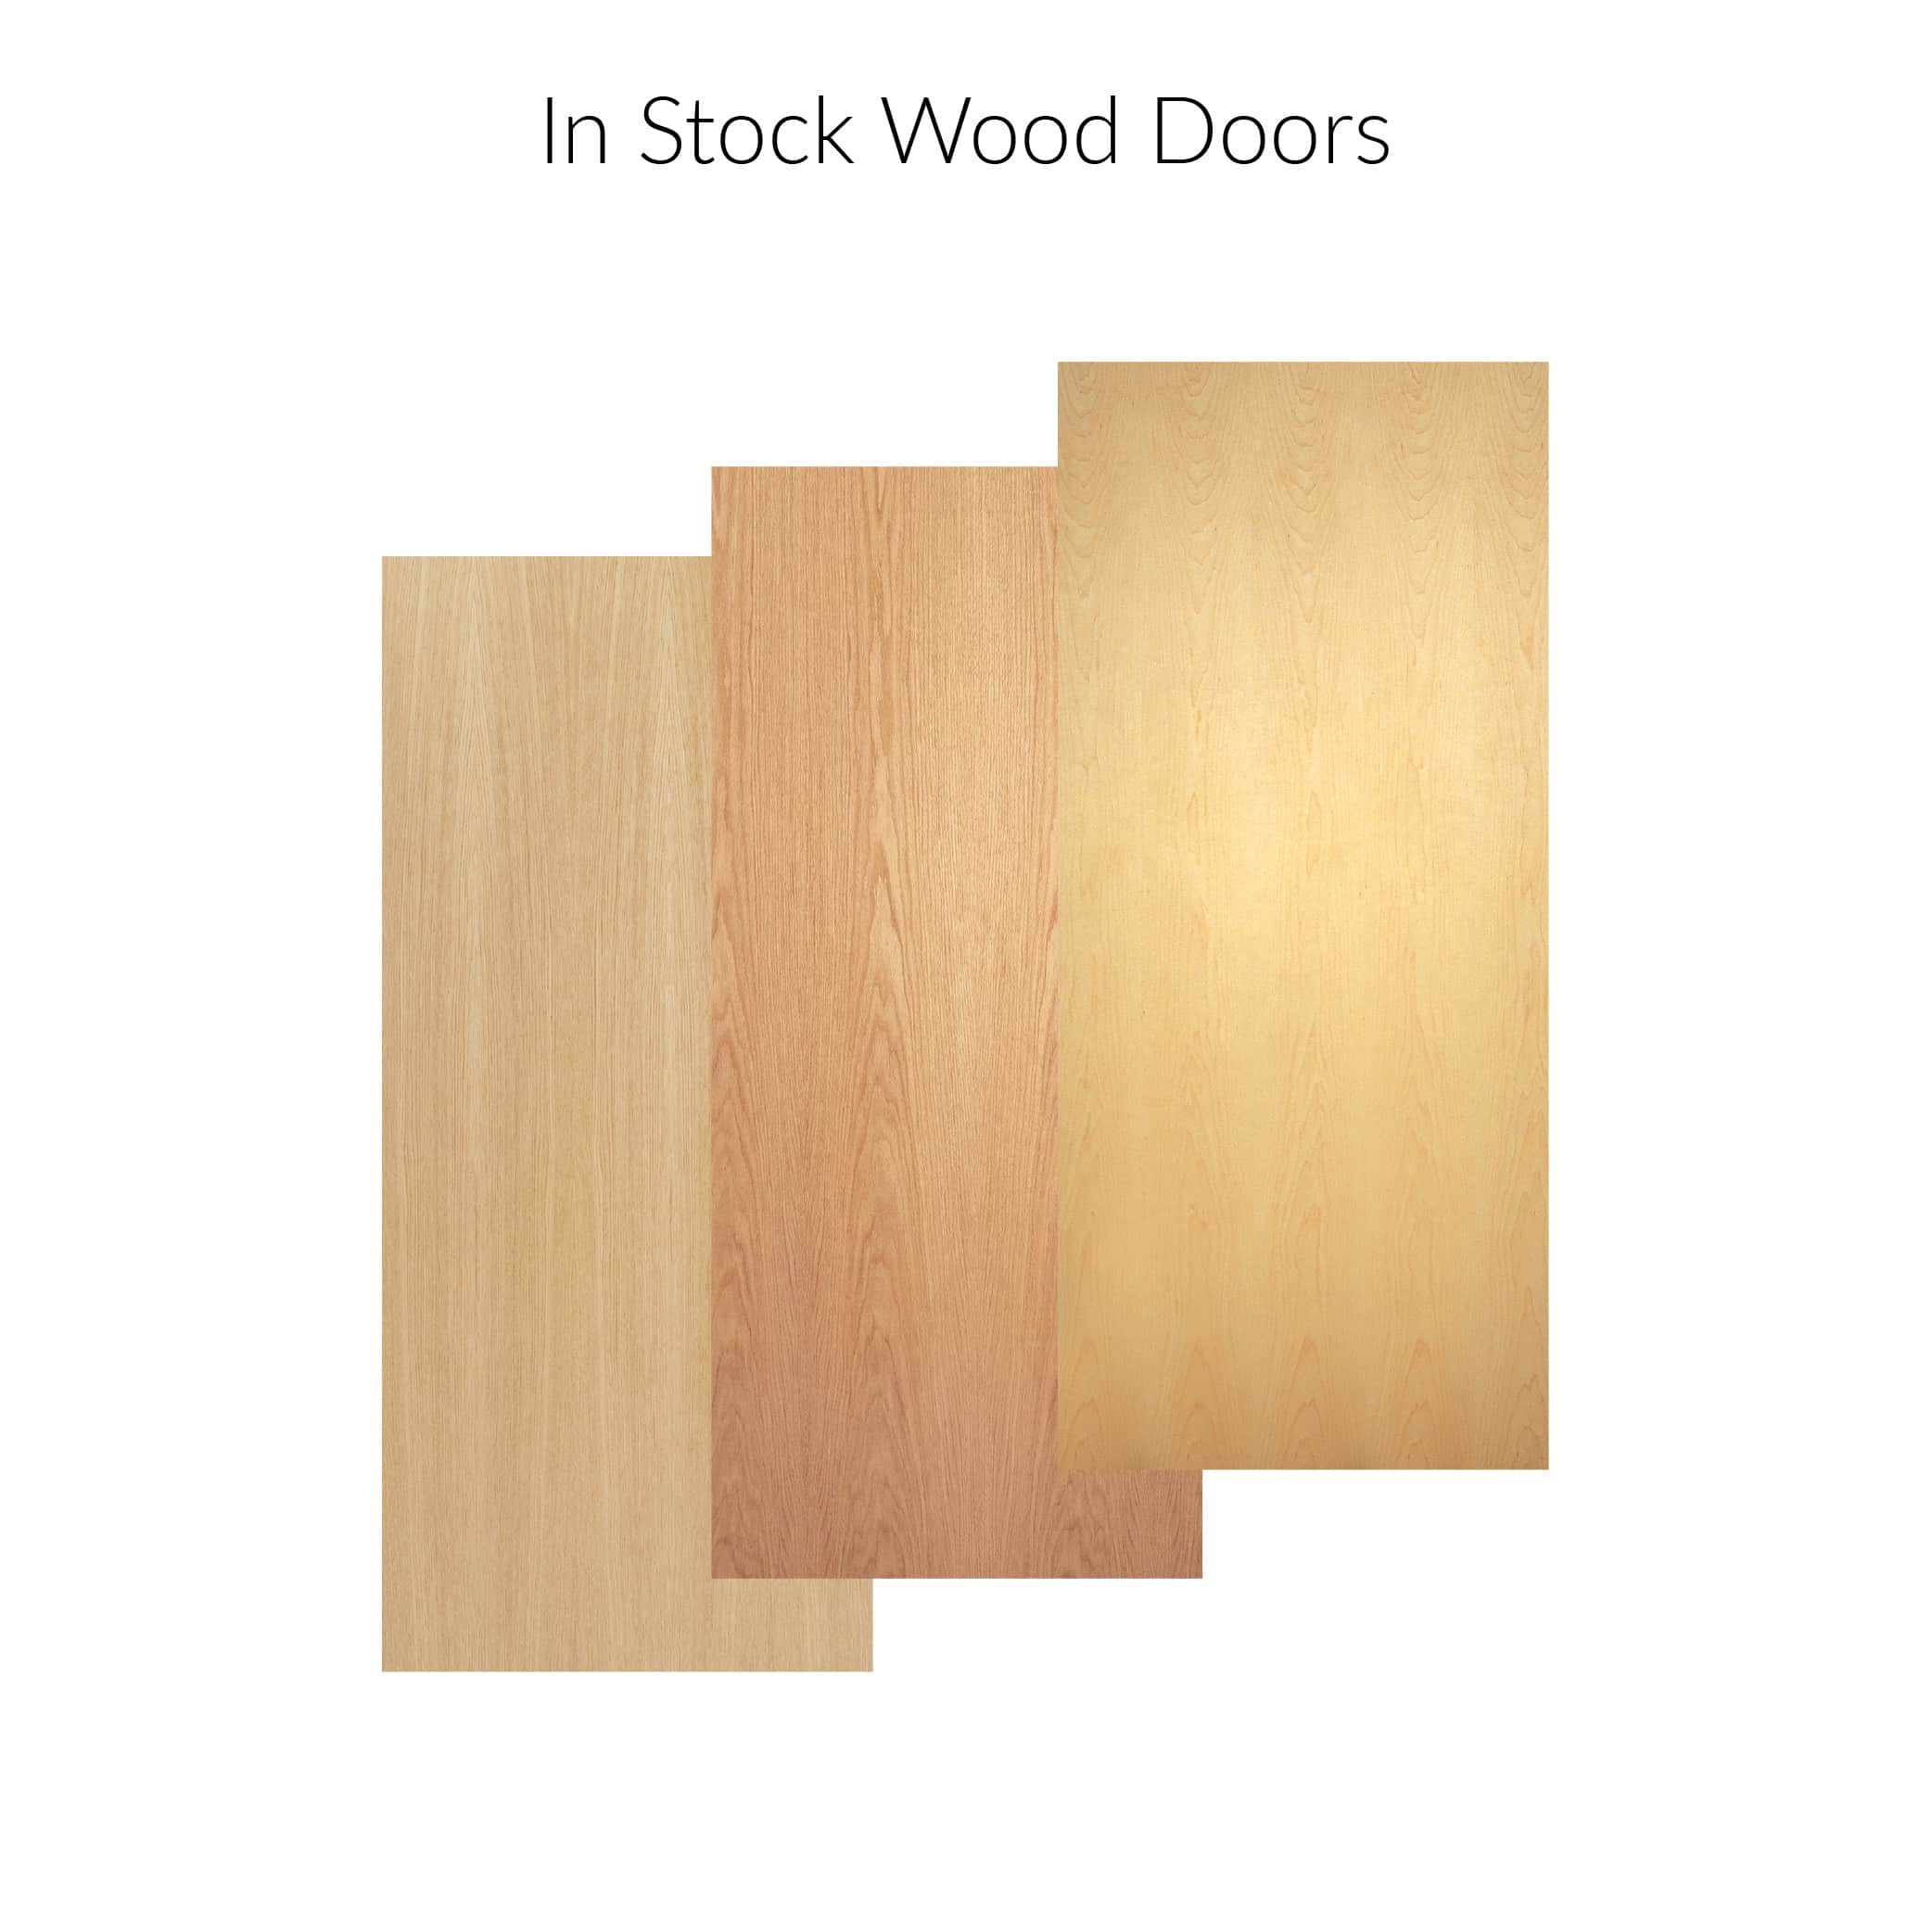 In stock wood doors.